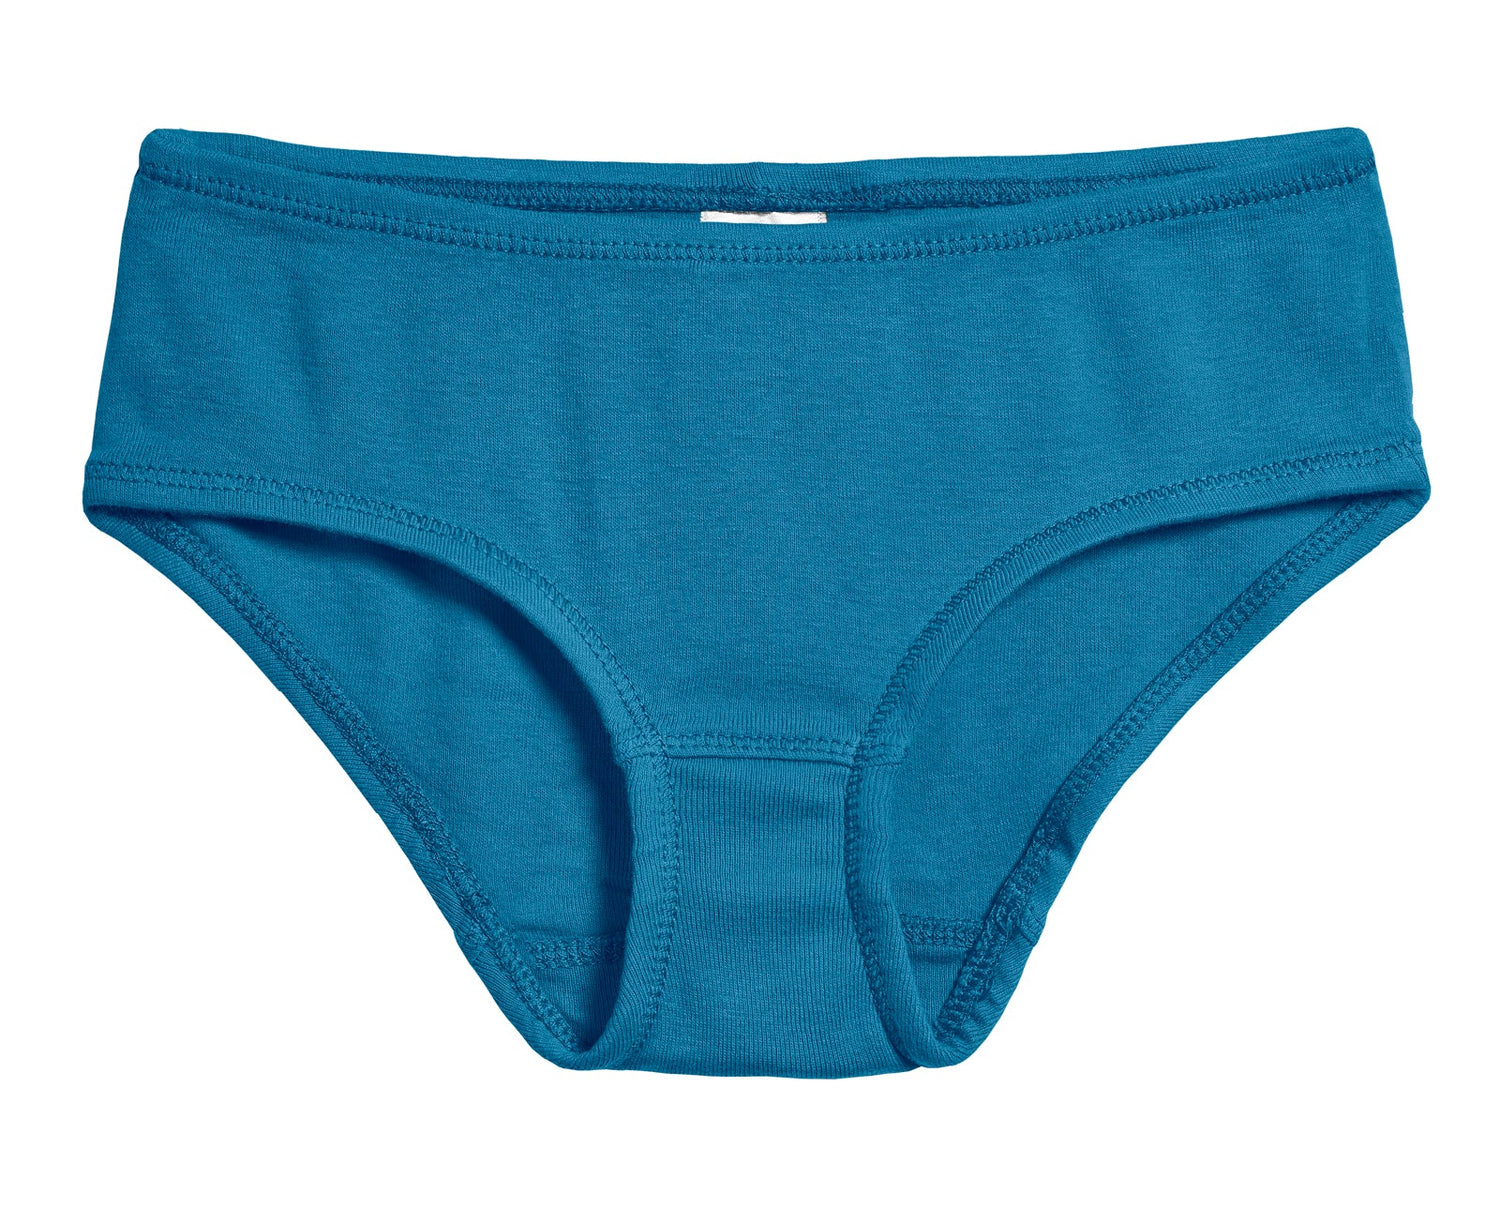 City Threads Girls Certified ORGANIC 100% Cotton Briefs Underwear Made in  USA